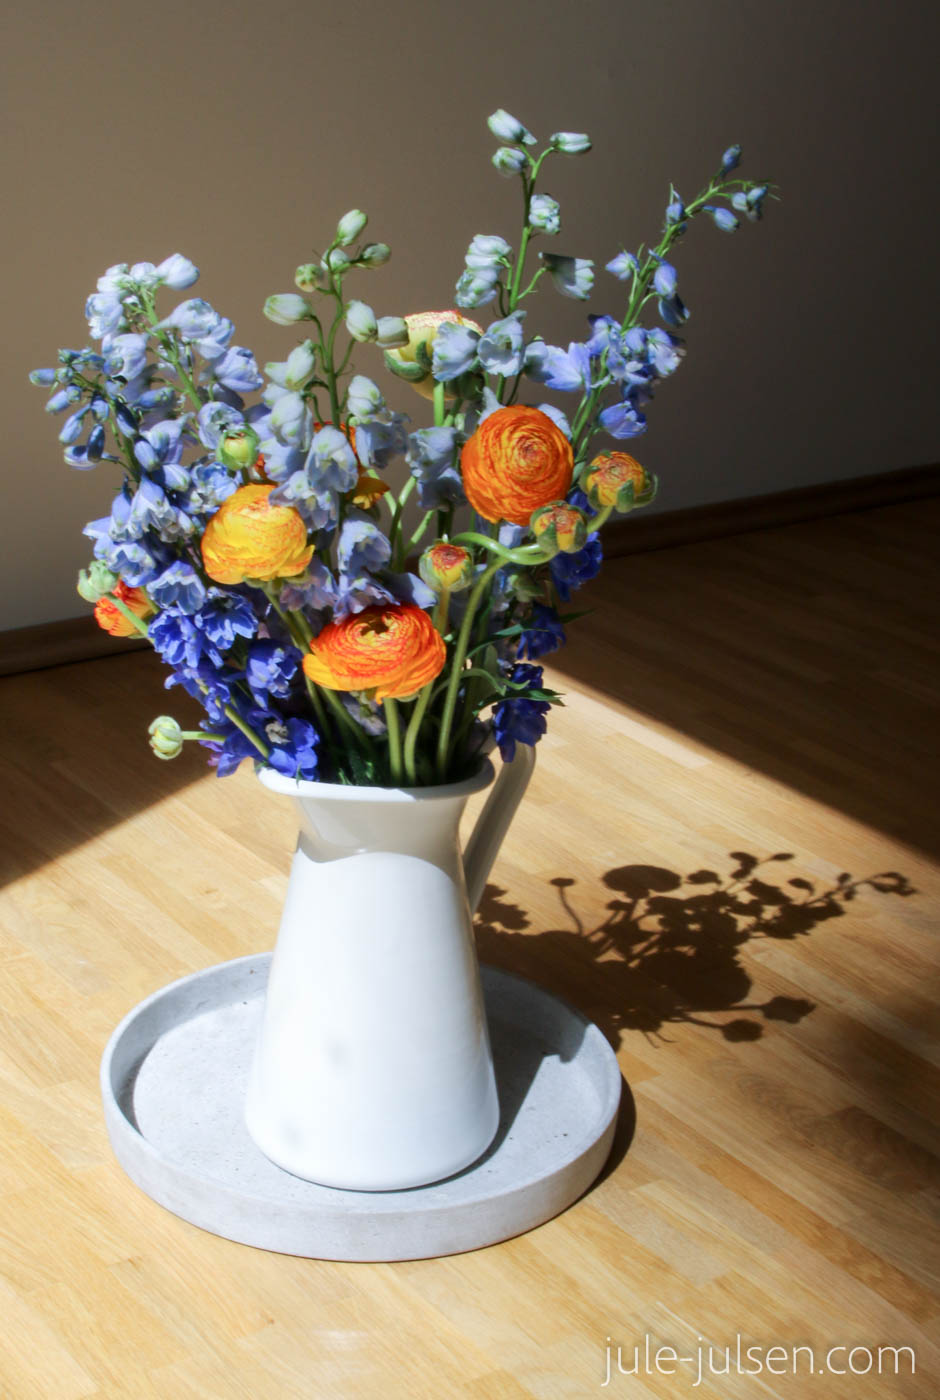 sommerlicher Blumenstrauss mit orange-gelben Ranunkeln und blau-lila farbenem Rittersporn